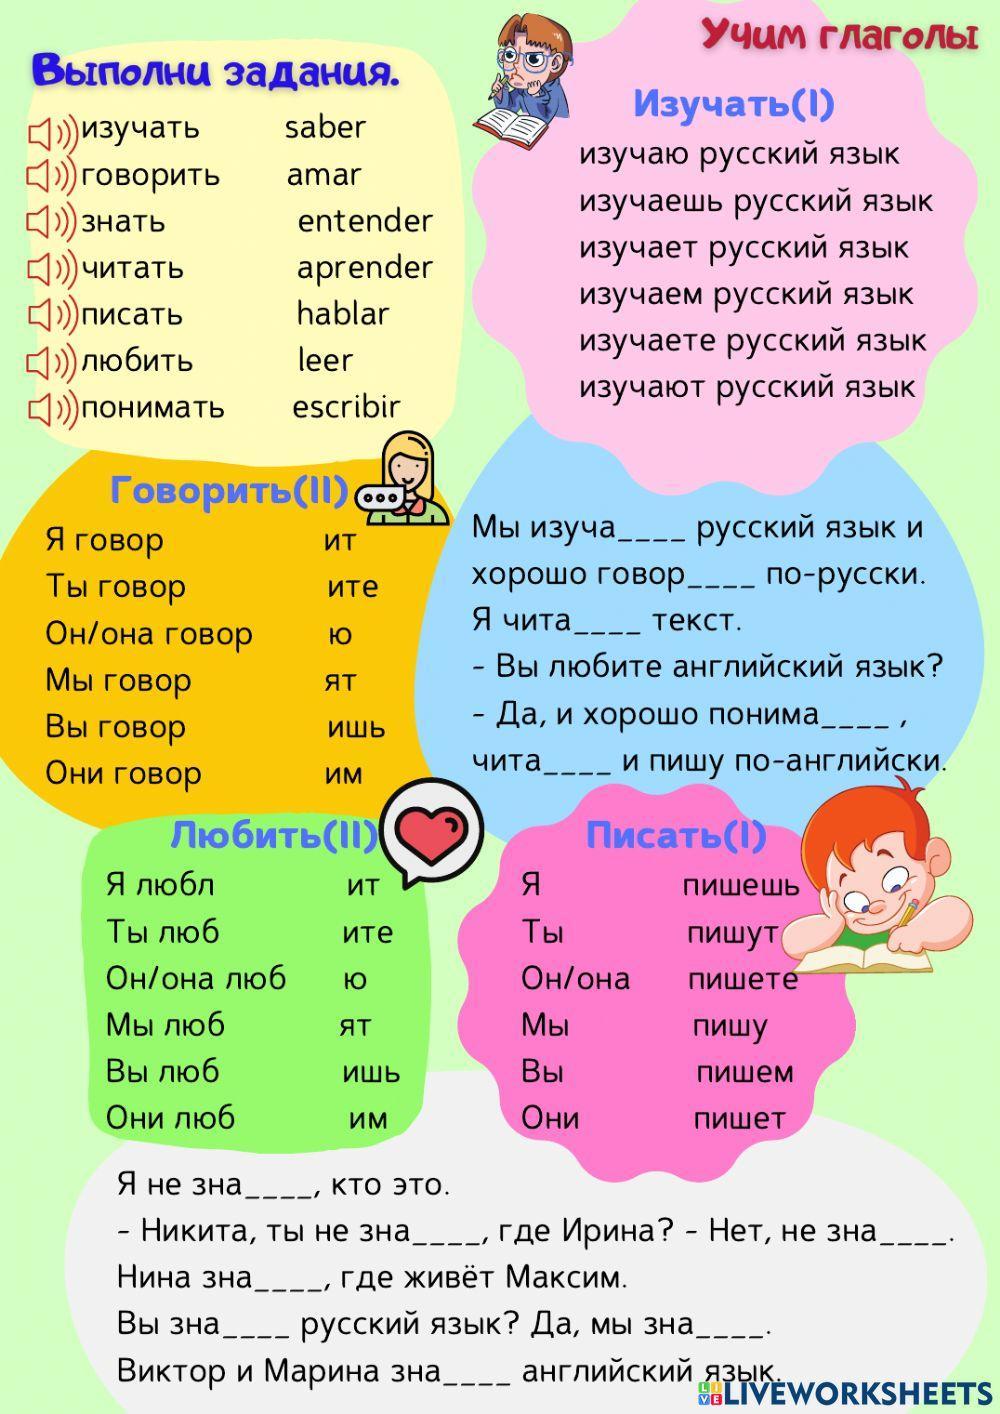 Глаголы. Знать русский язык - говорить по-русски